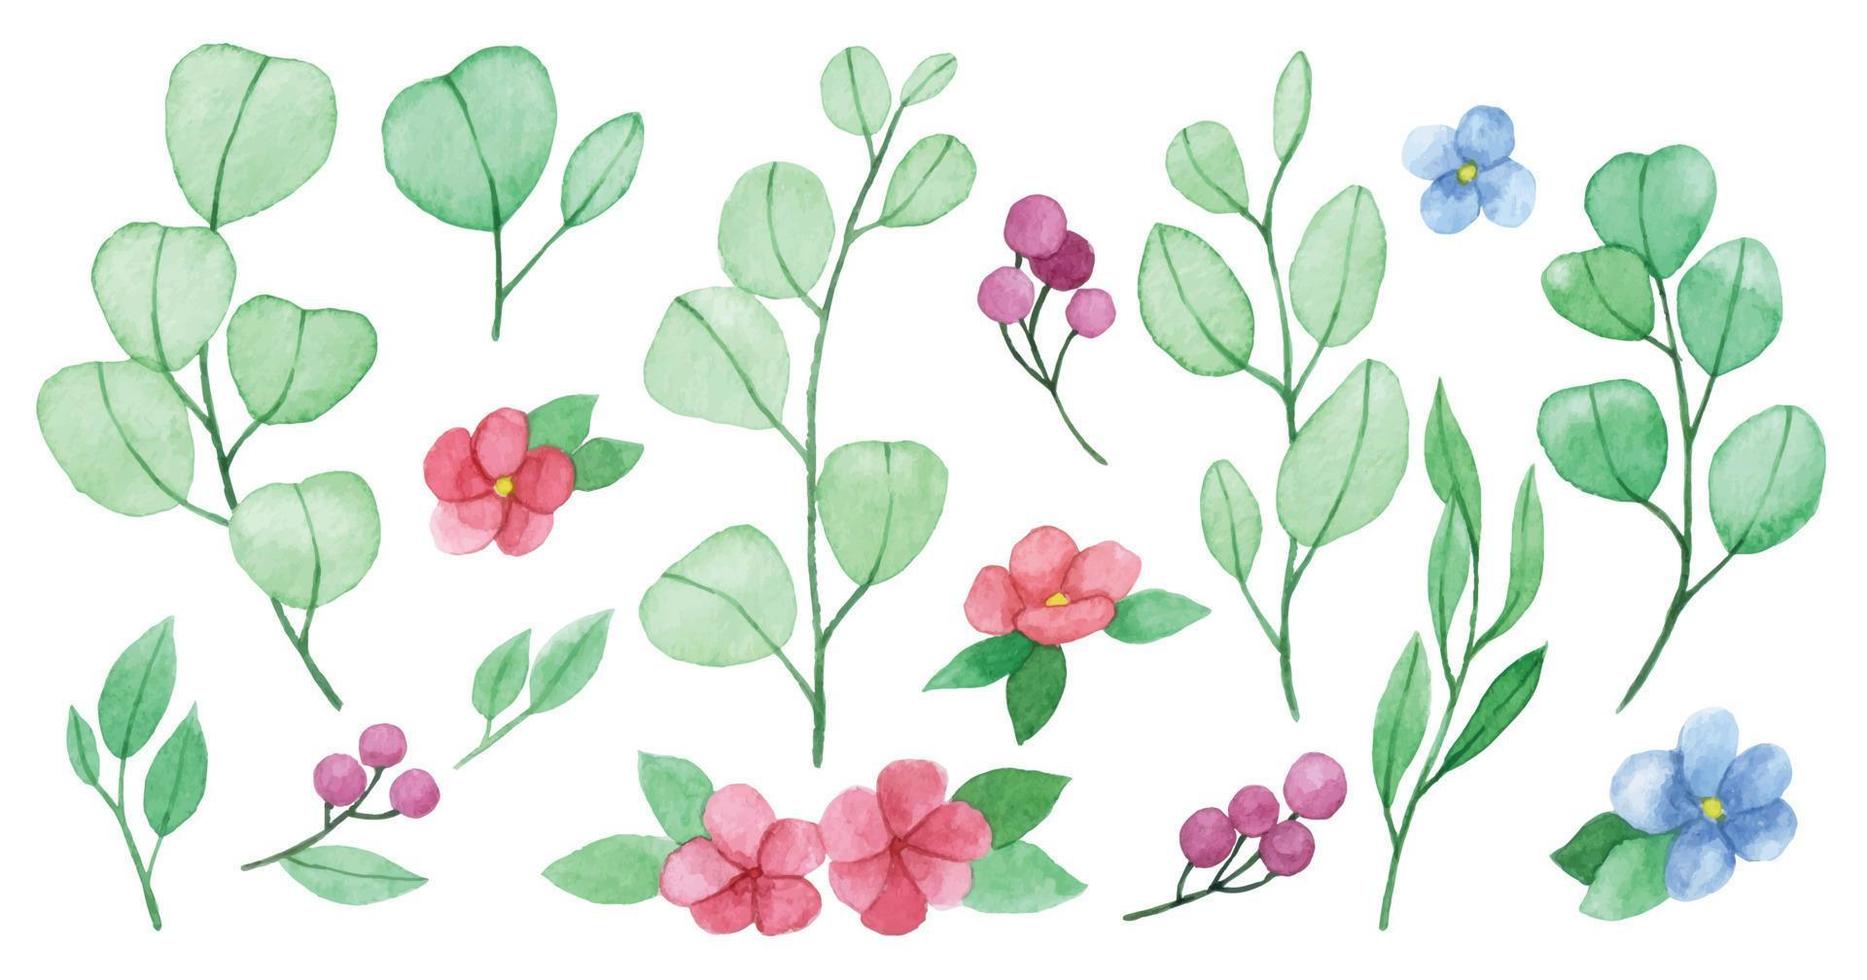 Aquarellzeichnung. satz süße eukalyptusblätter, blumen und beeren. einfache stilisierte Zeichnung in Pastellfarben vektor